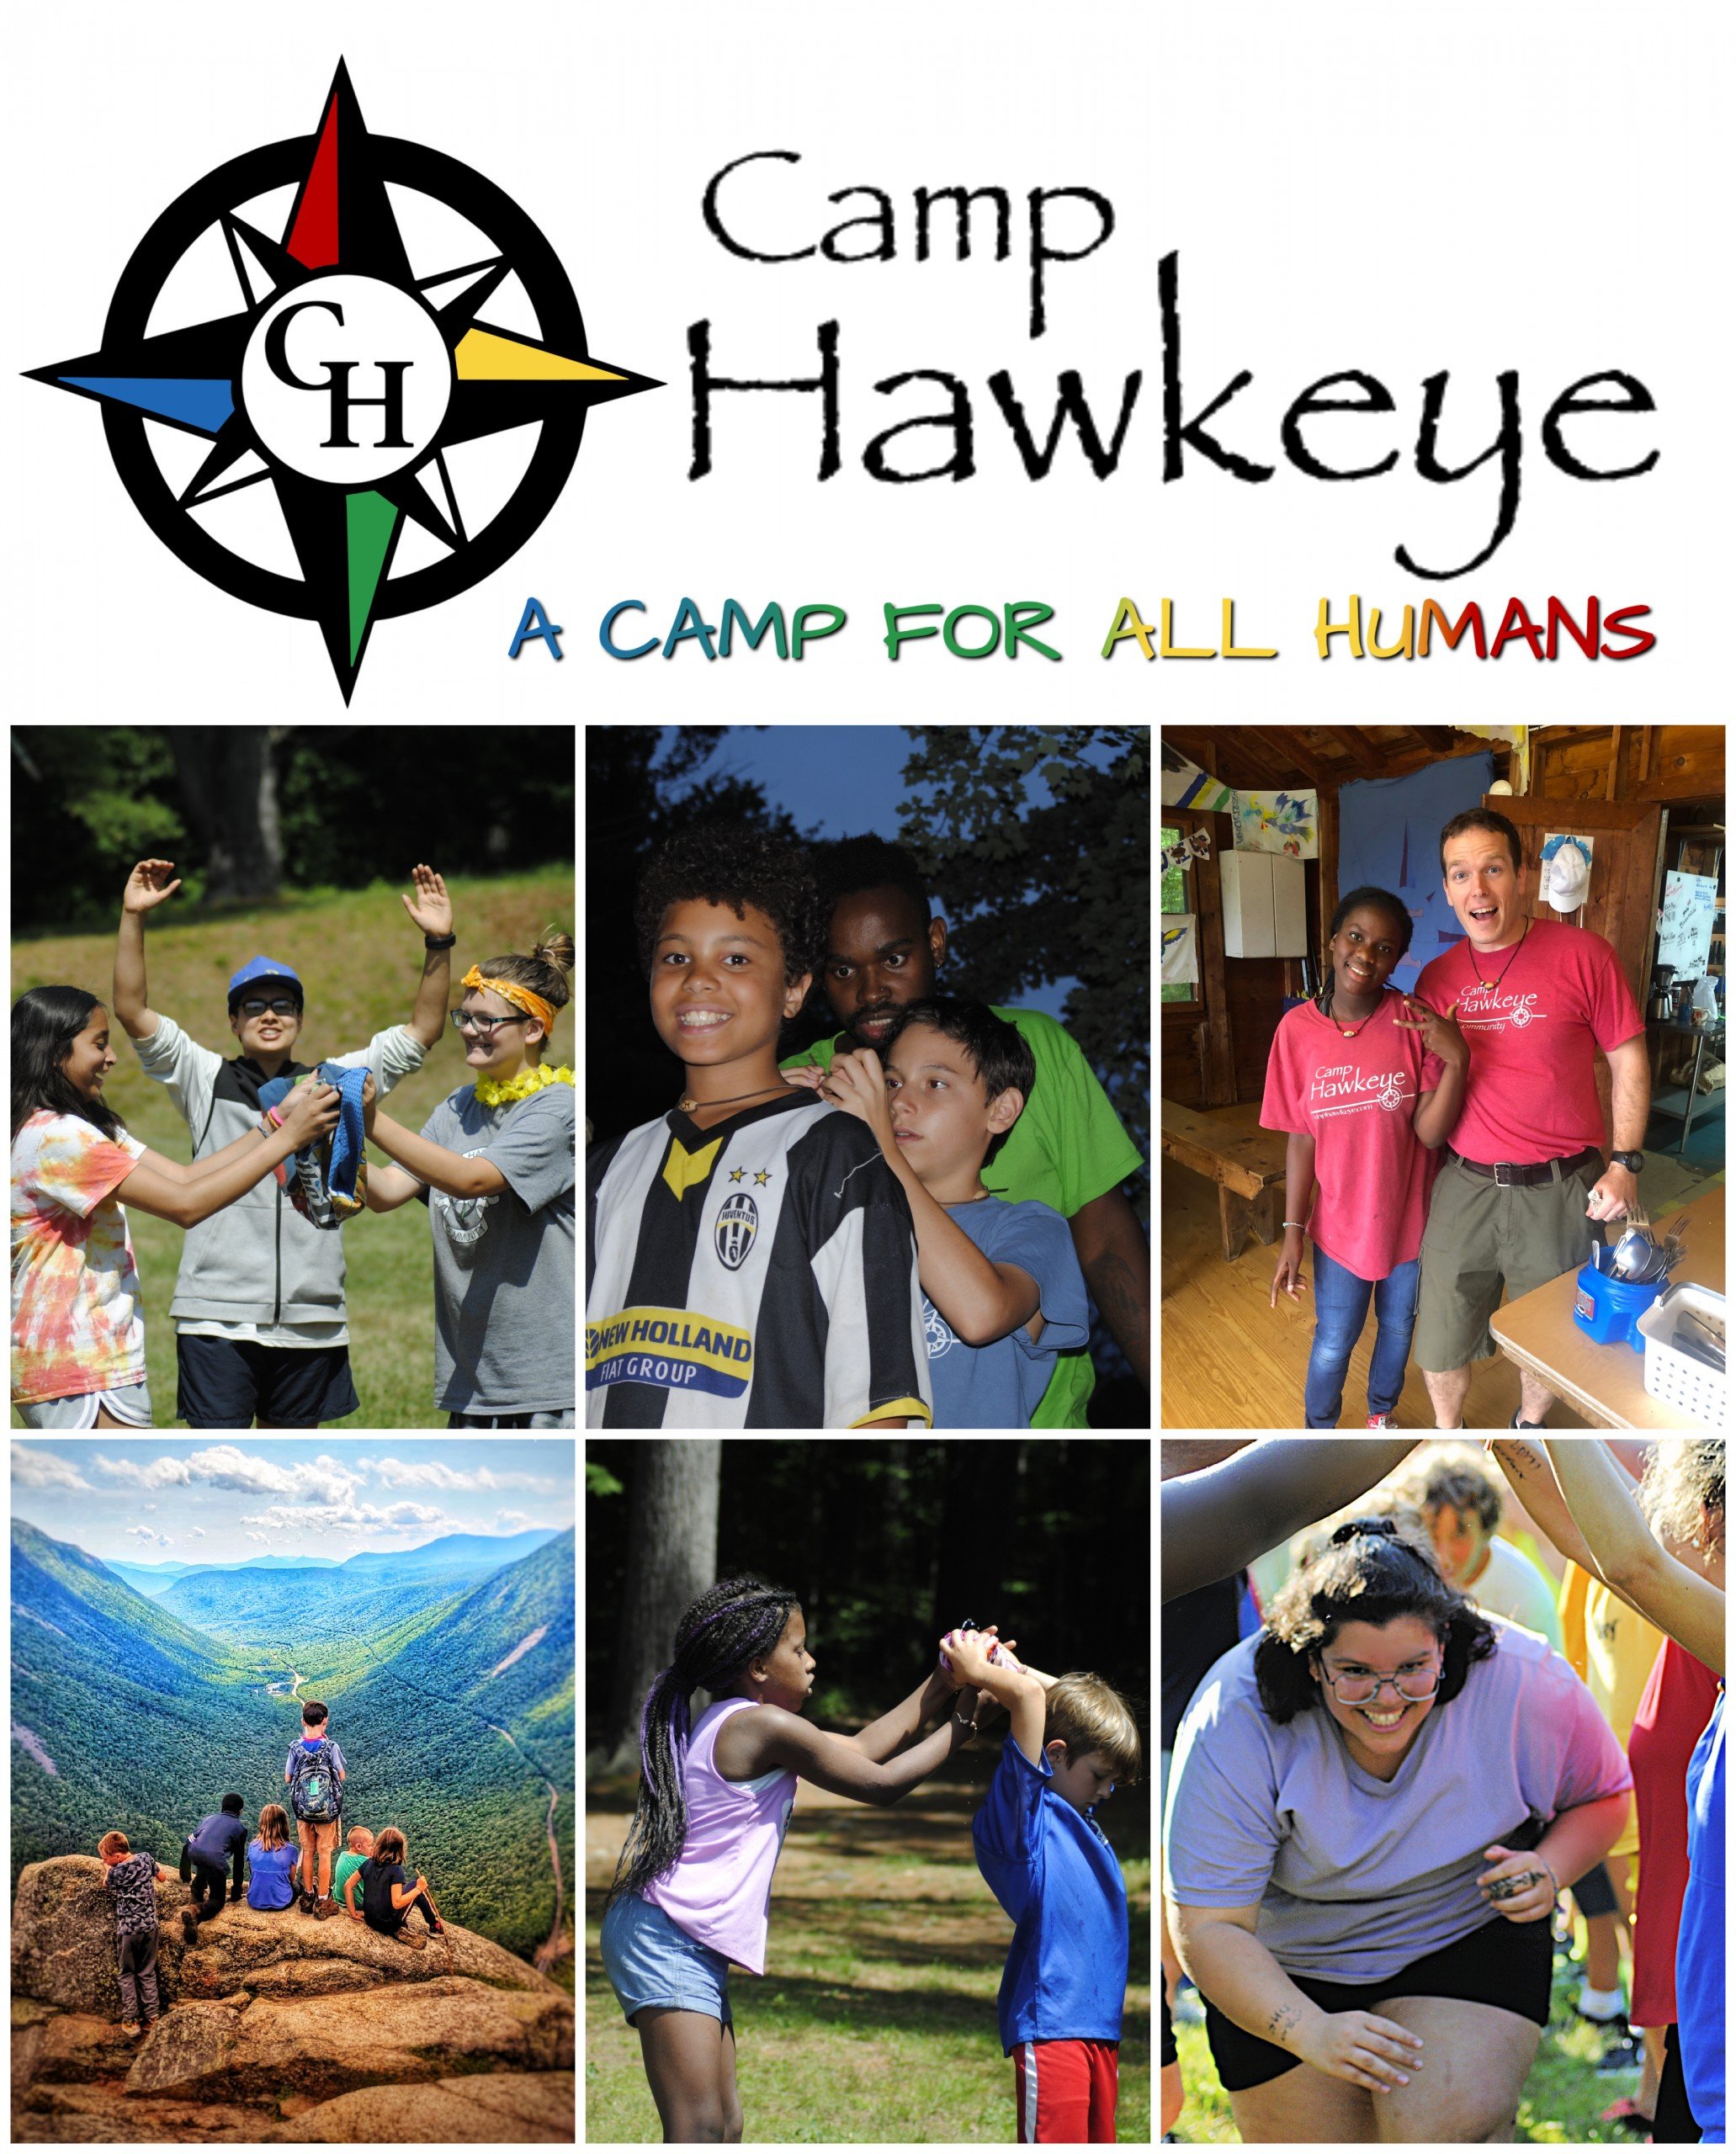 Camp Hawkeye